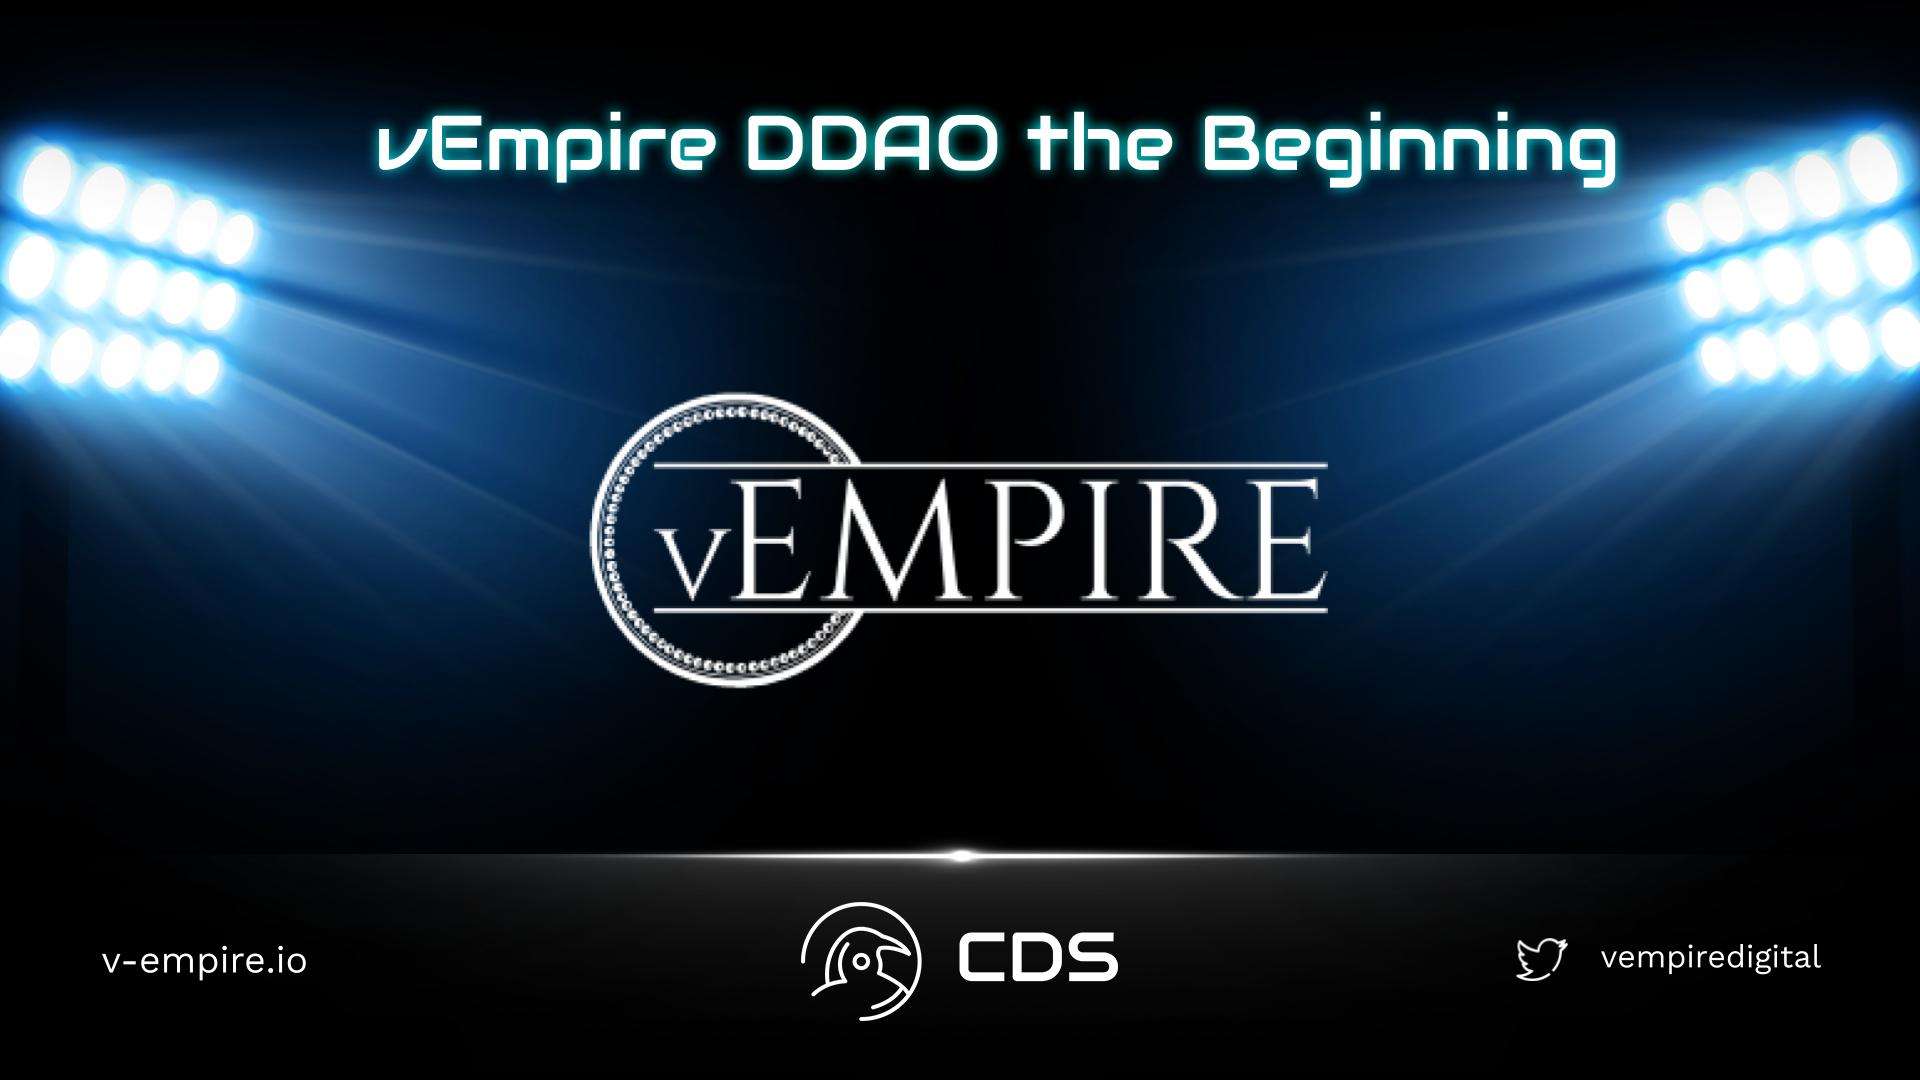 vEmpire DDAO the Beginning